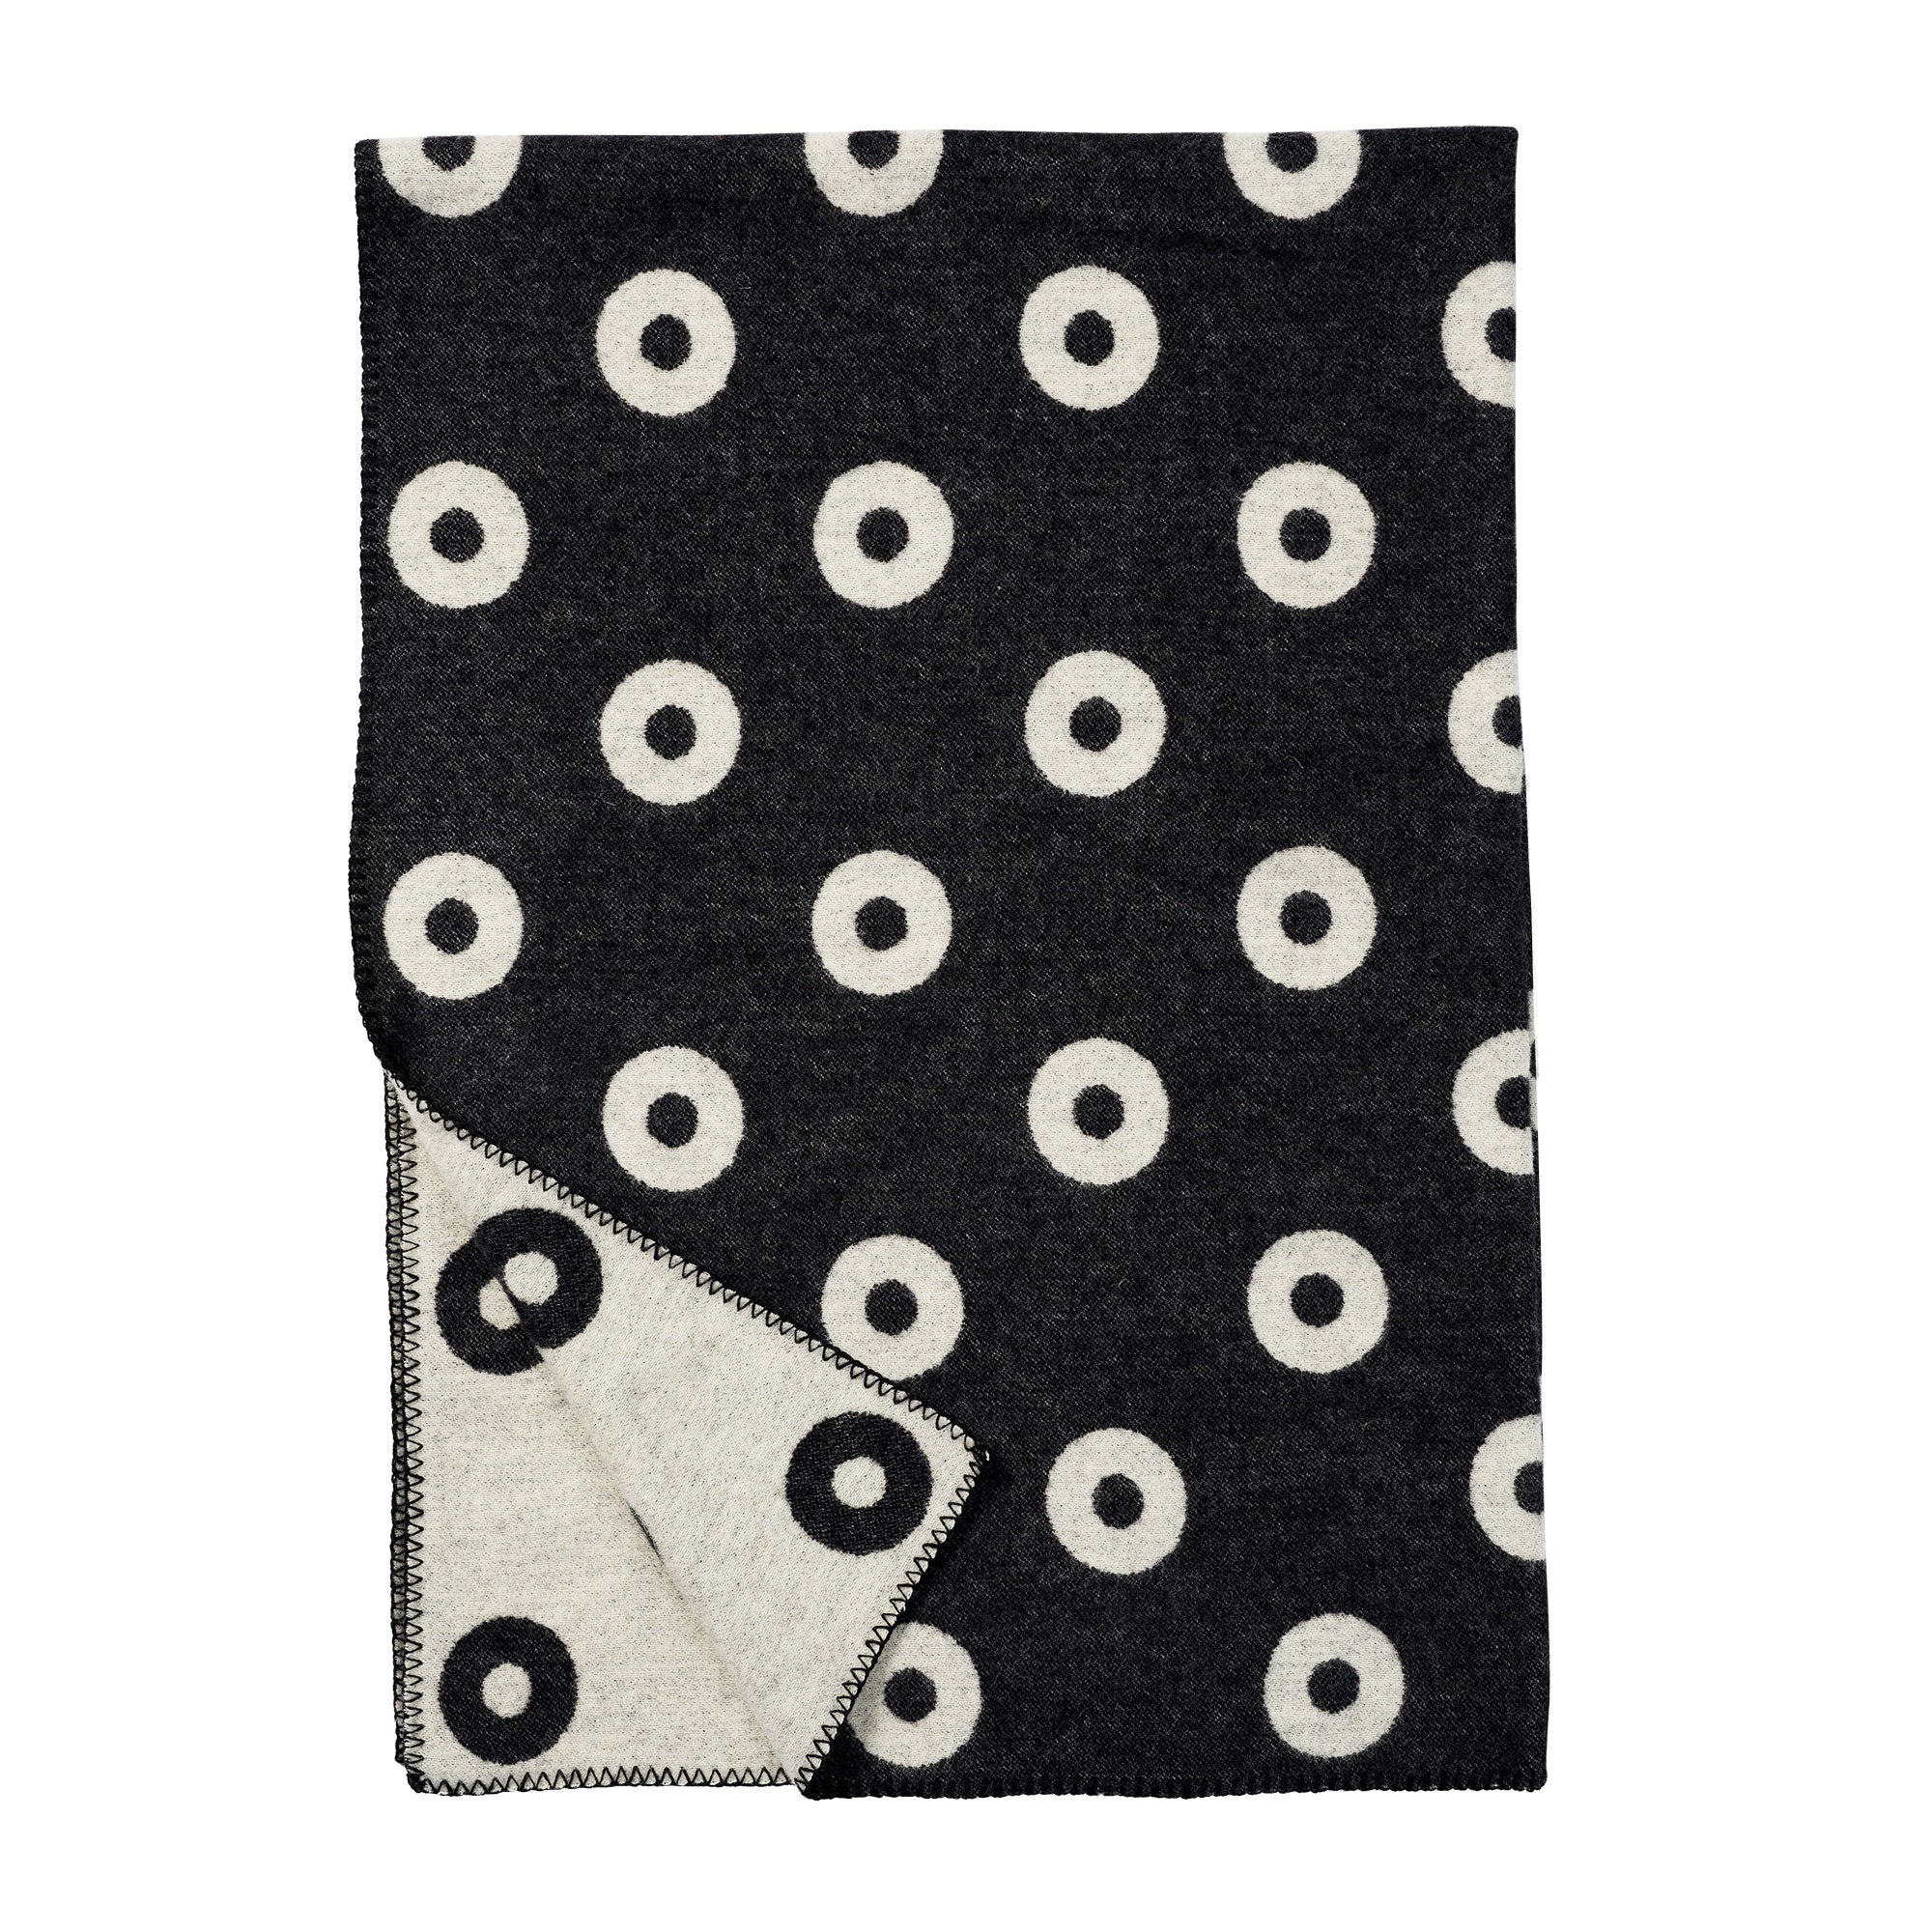 Rings Black 130x200cm Premium Wool Blanket